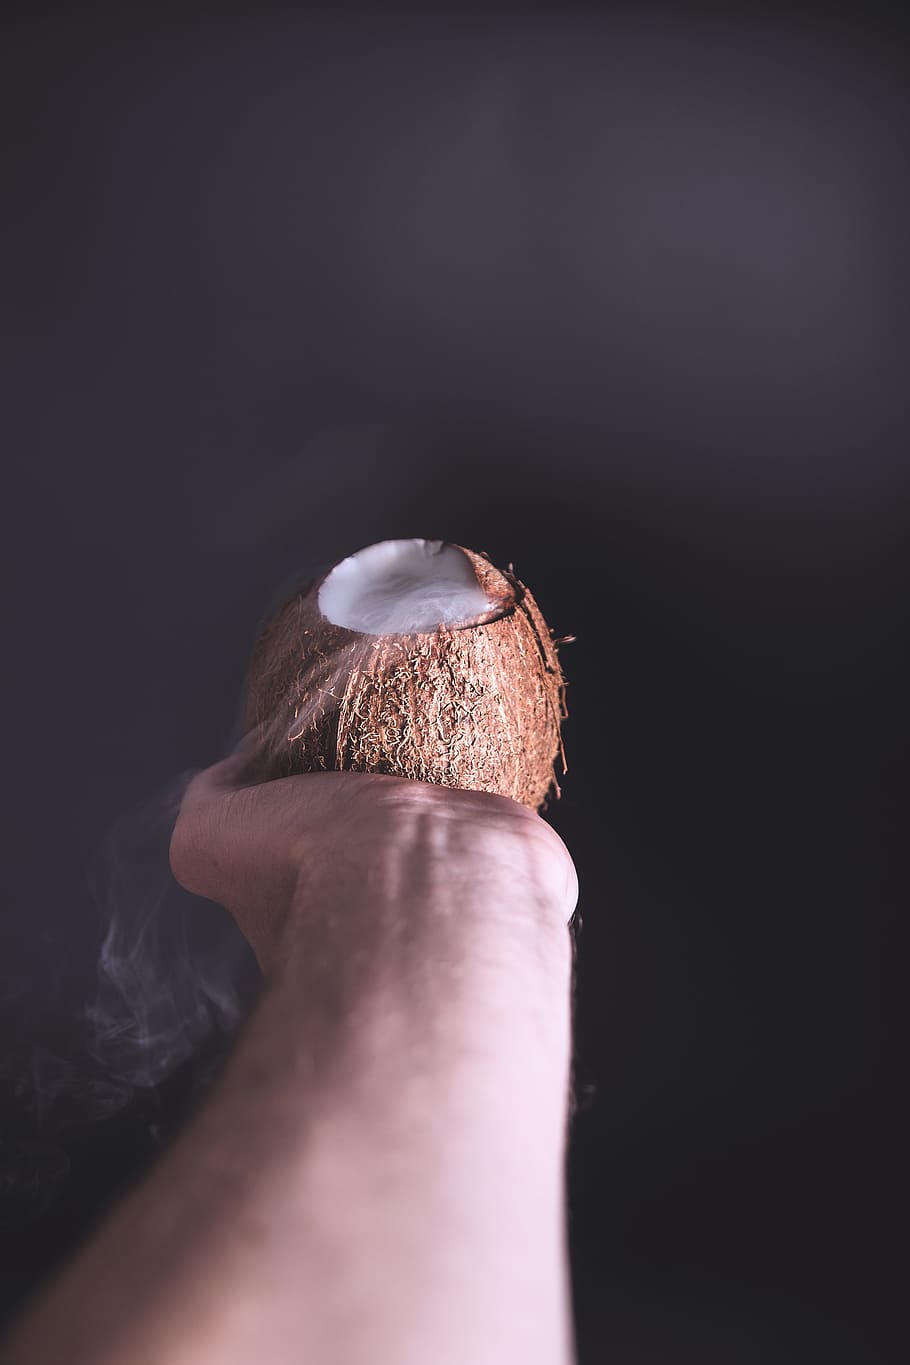 кокос, экзотика, фрукты, рука, минималистичный, простой, упрощенный, часть человеческого тела, человеческая рука, один человек